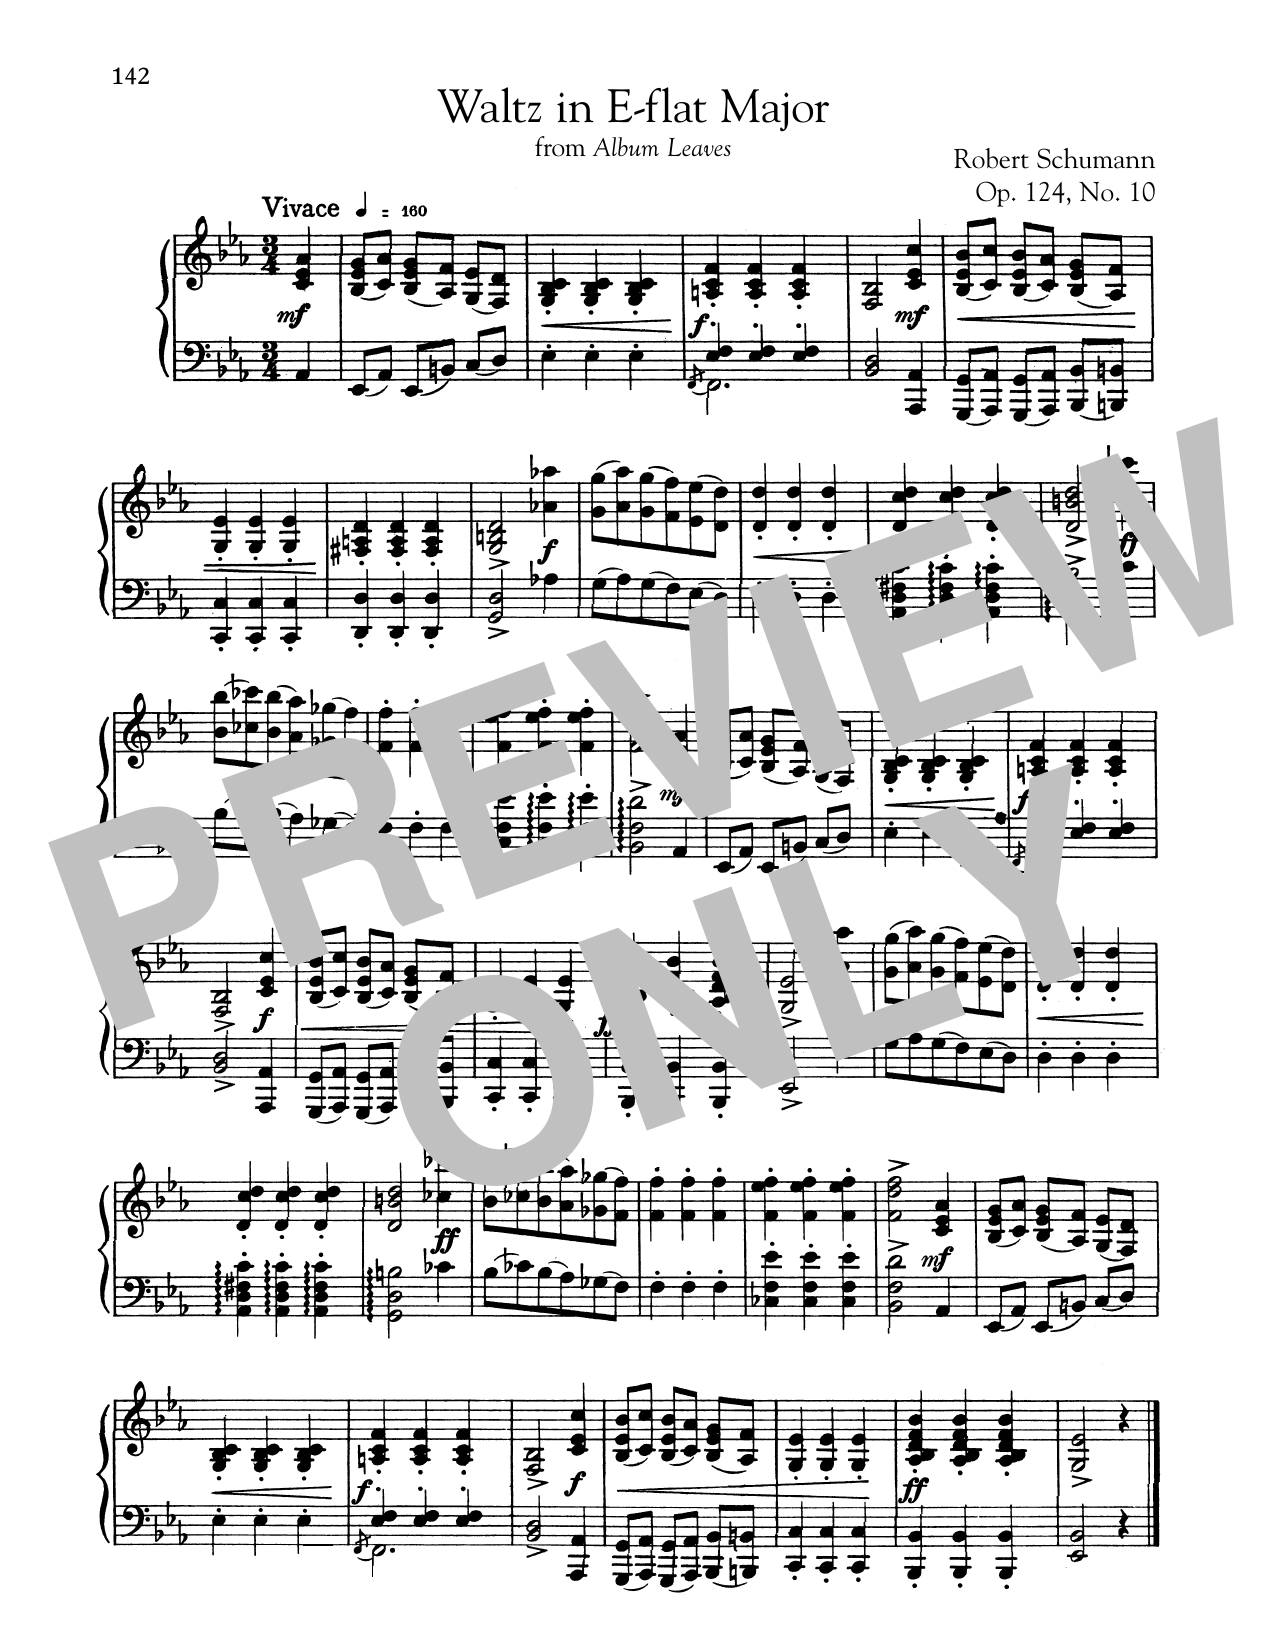 Download Robert Schumann Waltz In E-Flat Major Sheet Music